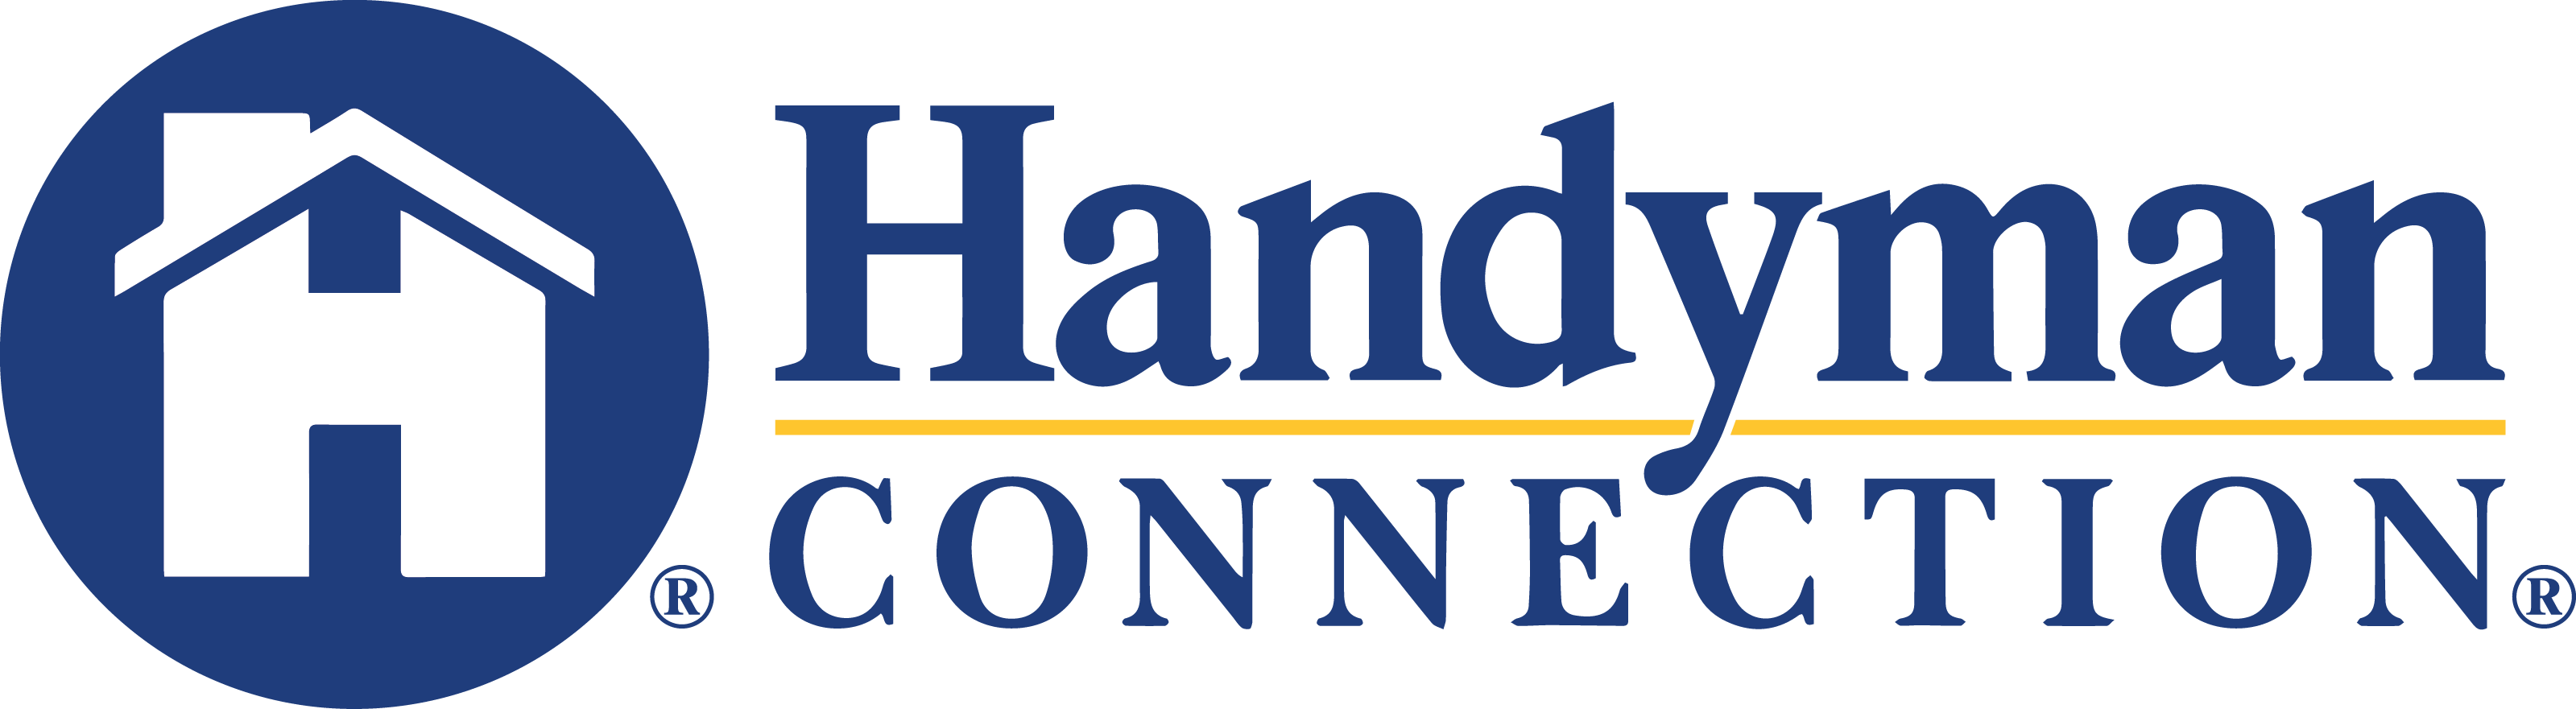 https://handymanconnection.com/alpharetta/wp-content/uploads/sites/7/2021/05/HandymanConnection-logo-2-1.png